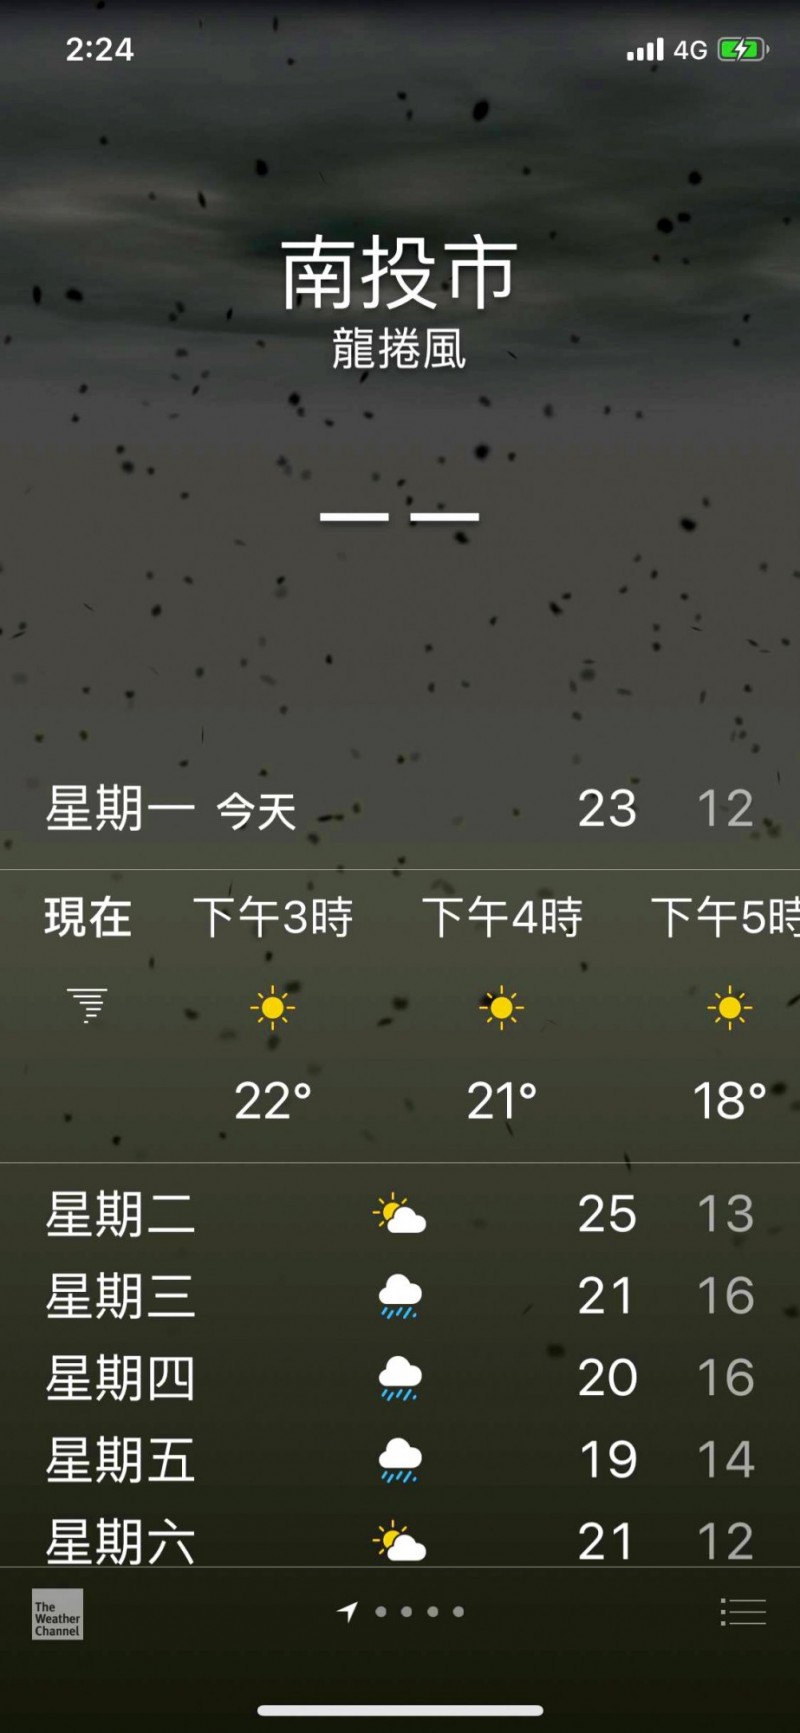 Iphone累了嗎 天氣app顯示 龍捲風 等1小時天氣晴朗 南投縣 自由時報電子報